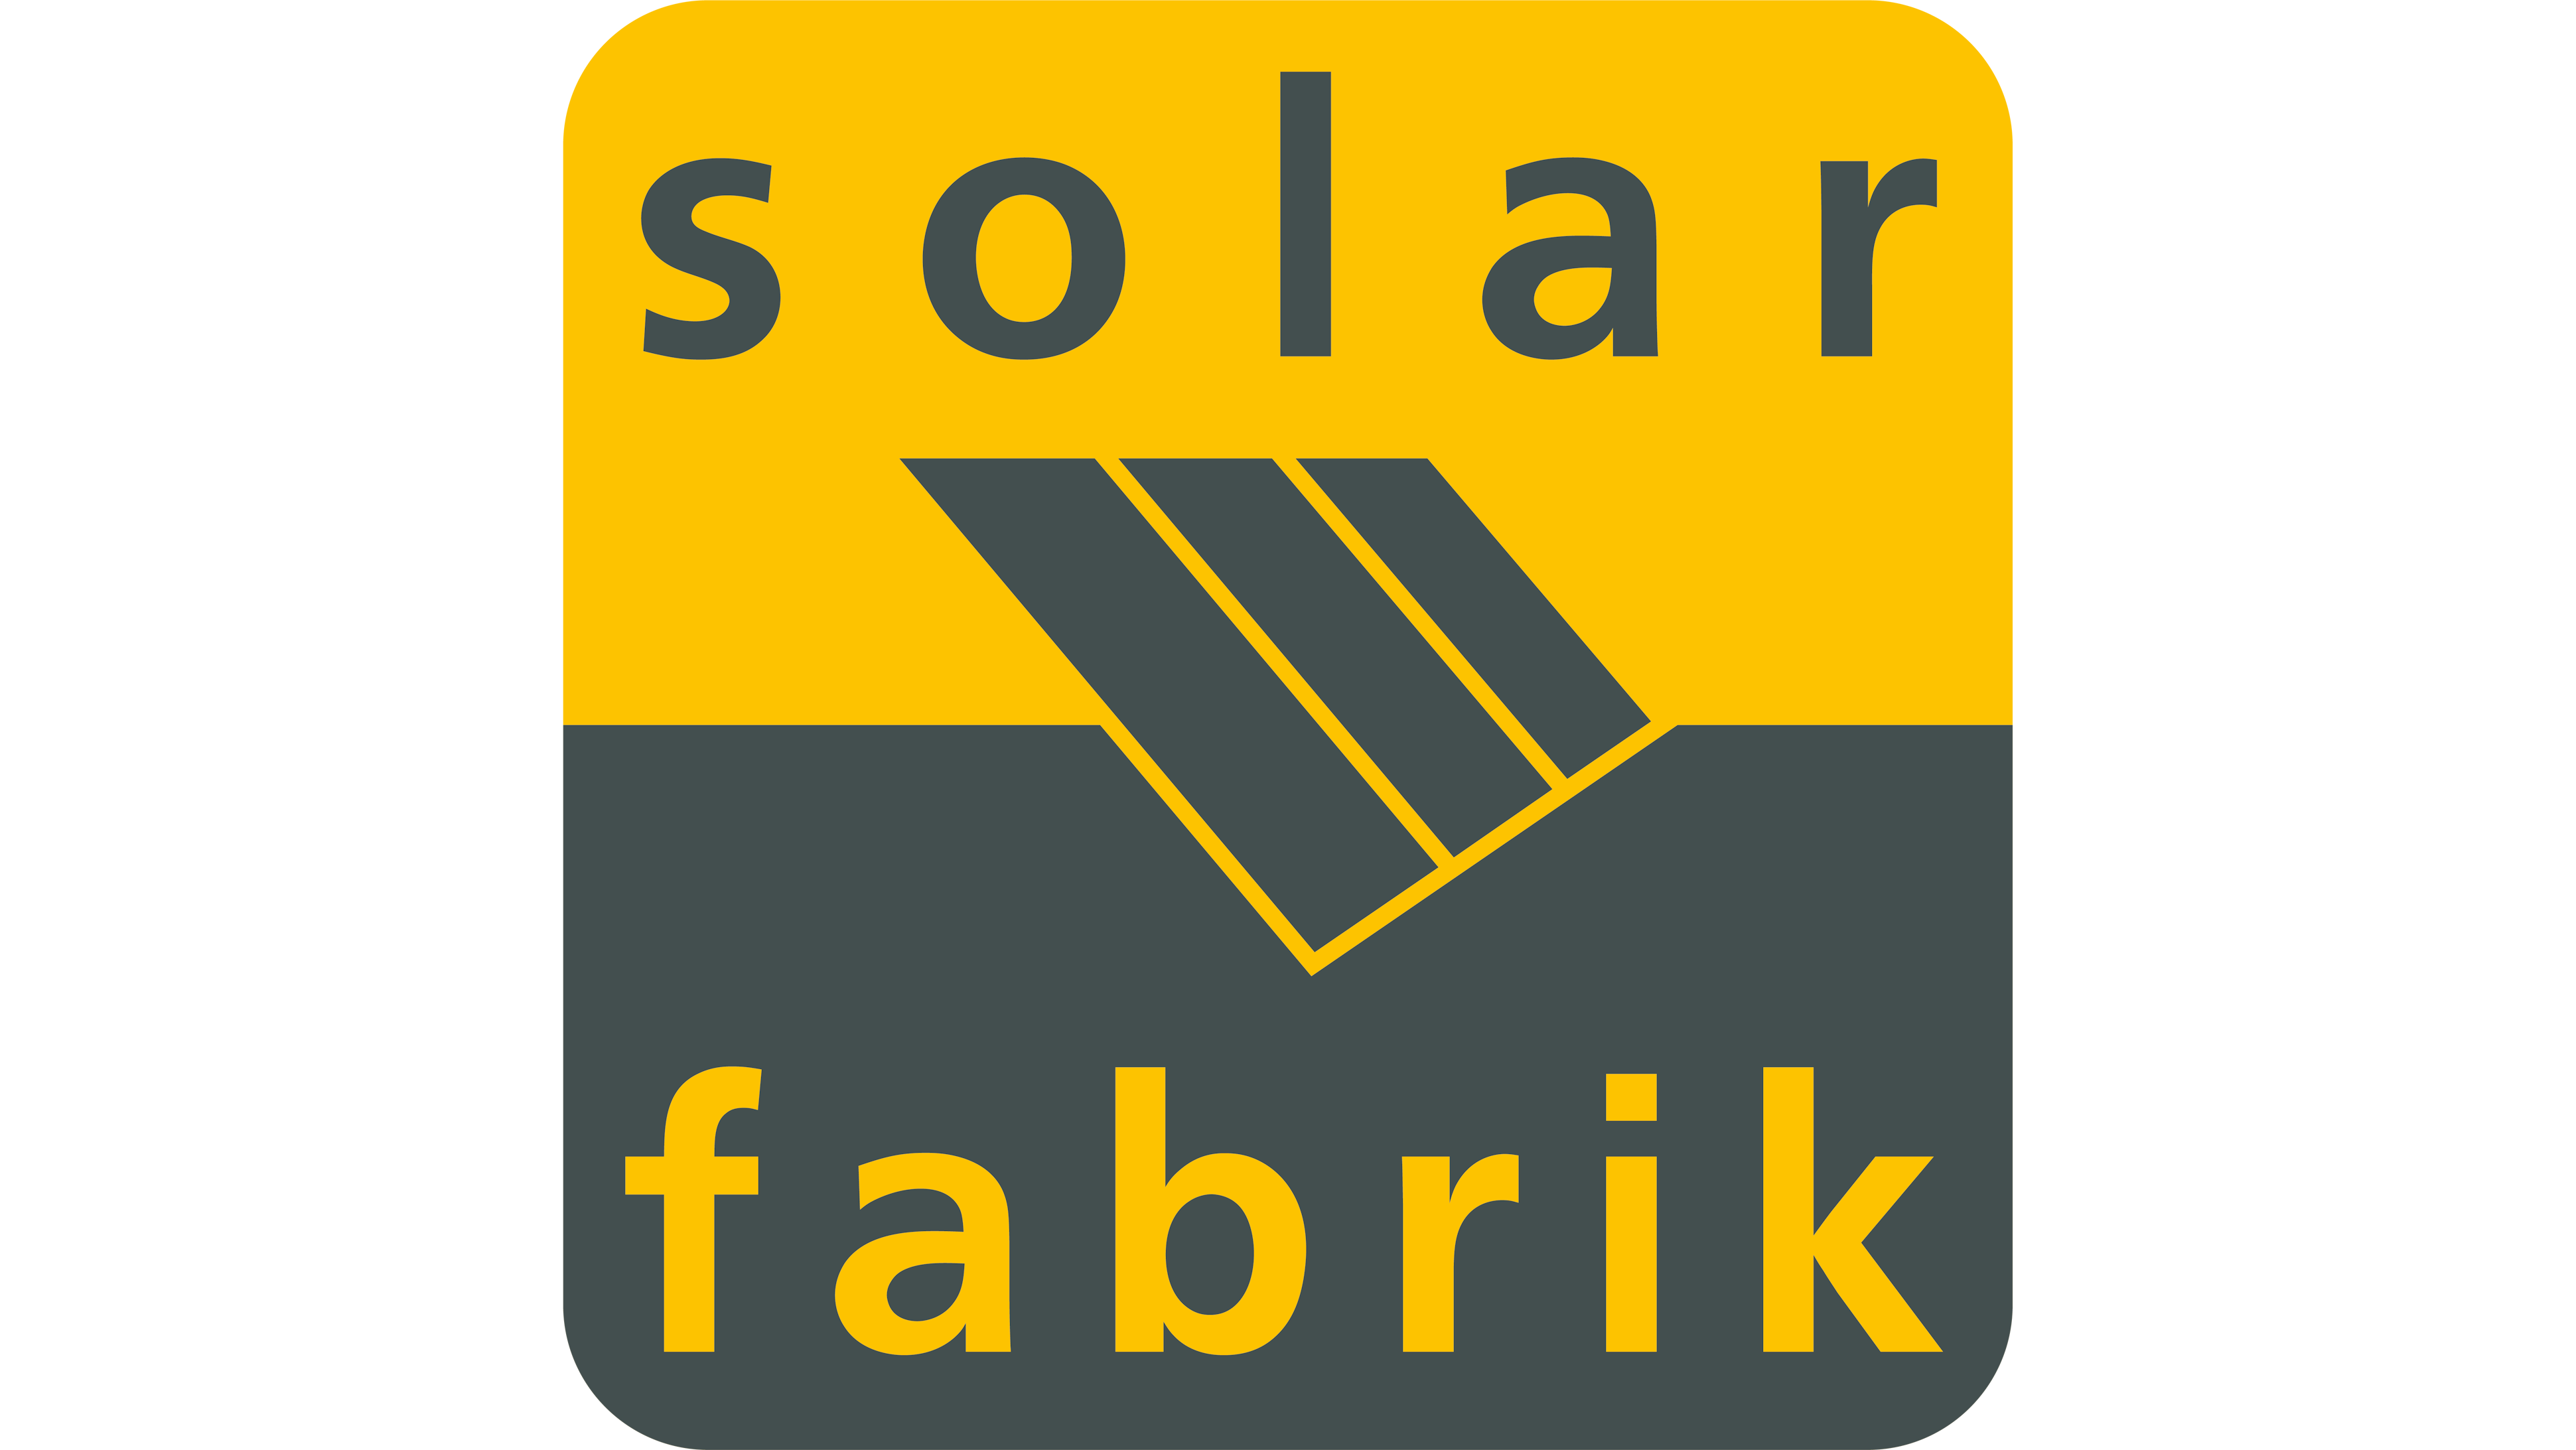 SolarFabrik